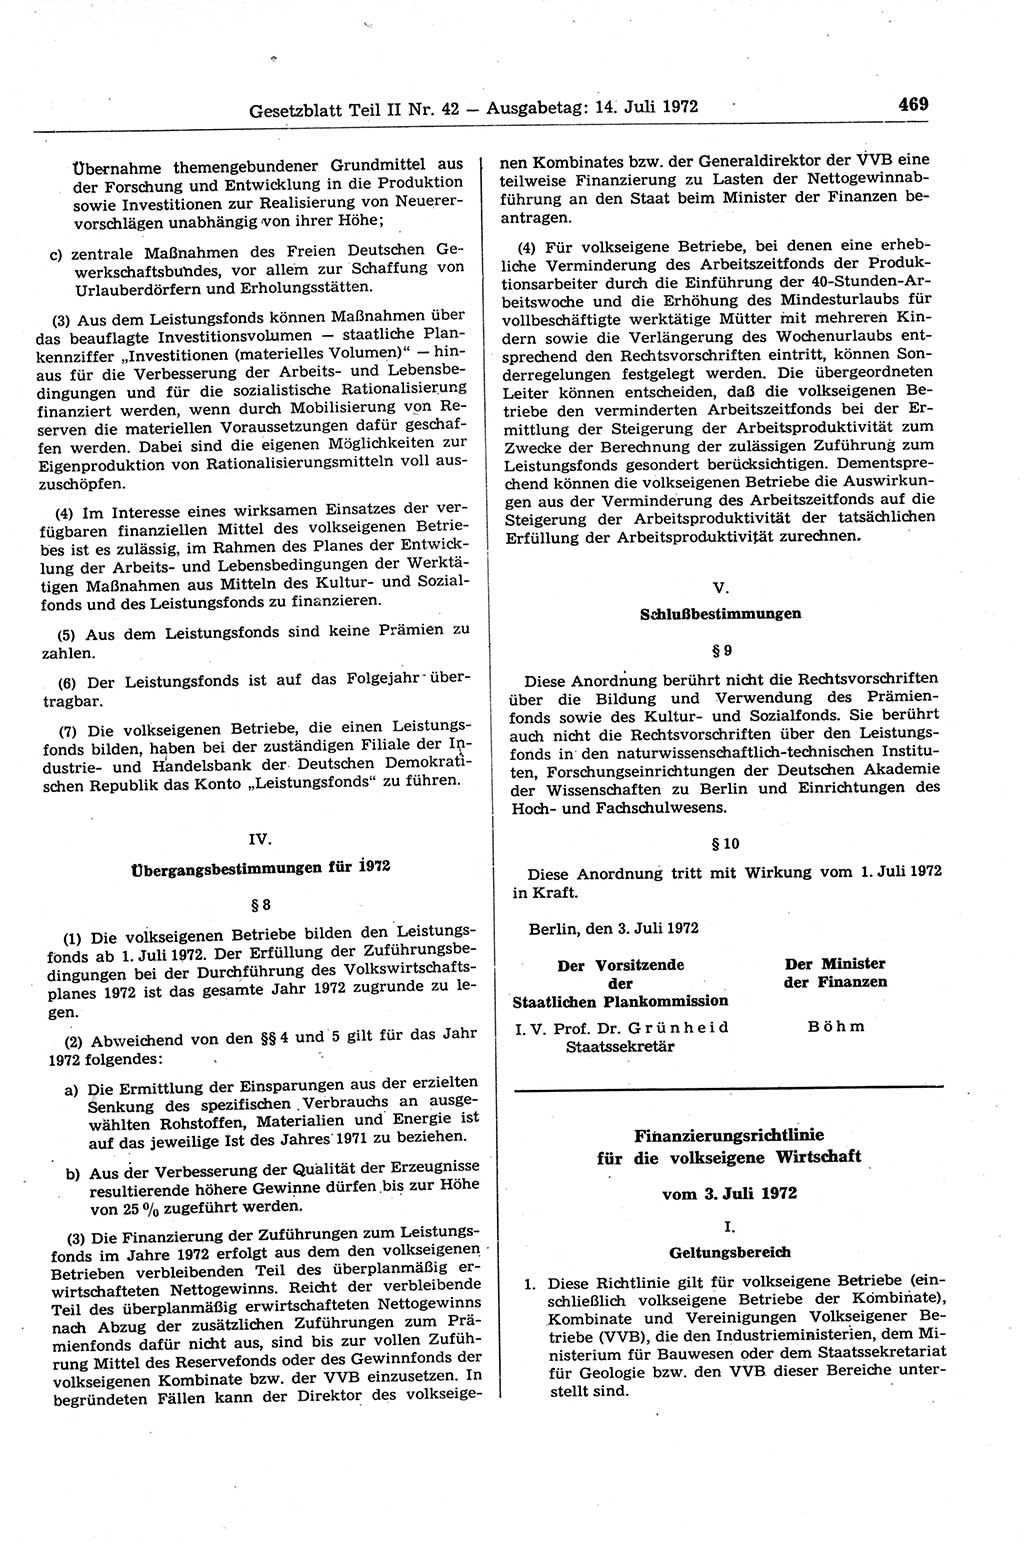 Gesetzblatt (GBl.) der Deutschen Demokratischen Republik (DDR) Teil ⅠⅠ 1972, Seite 469 (GBl. DDR ⅠⅠ 1972, S. 469)